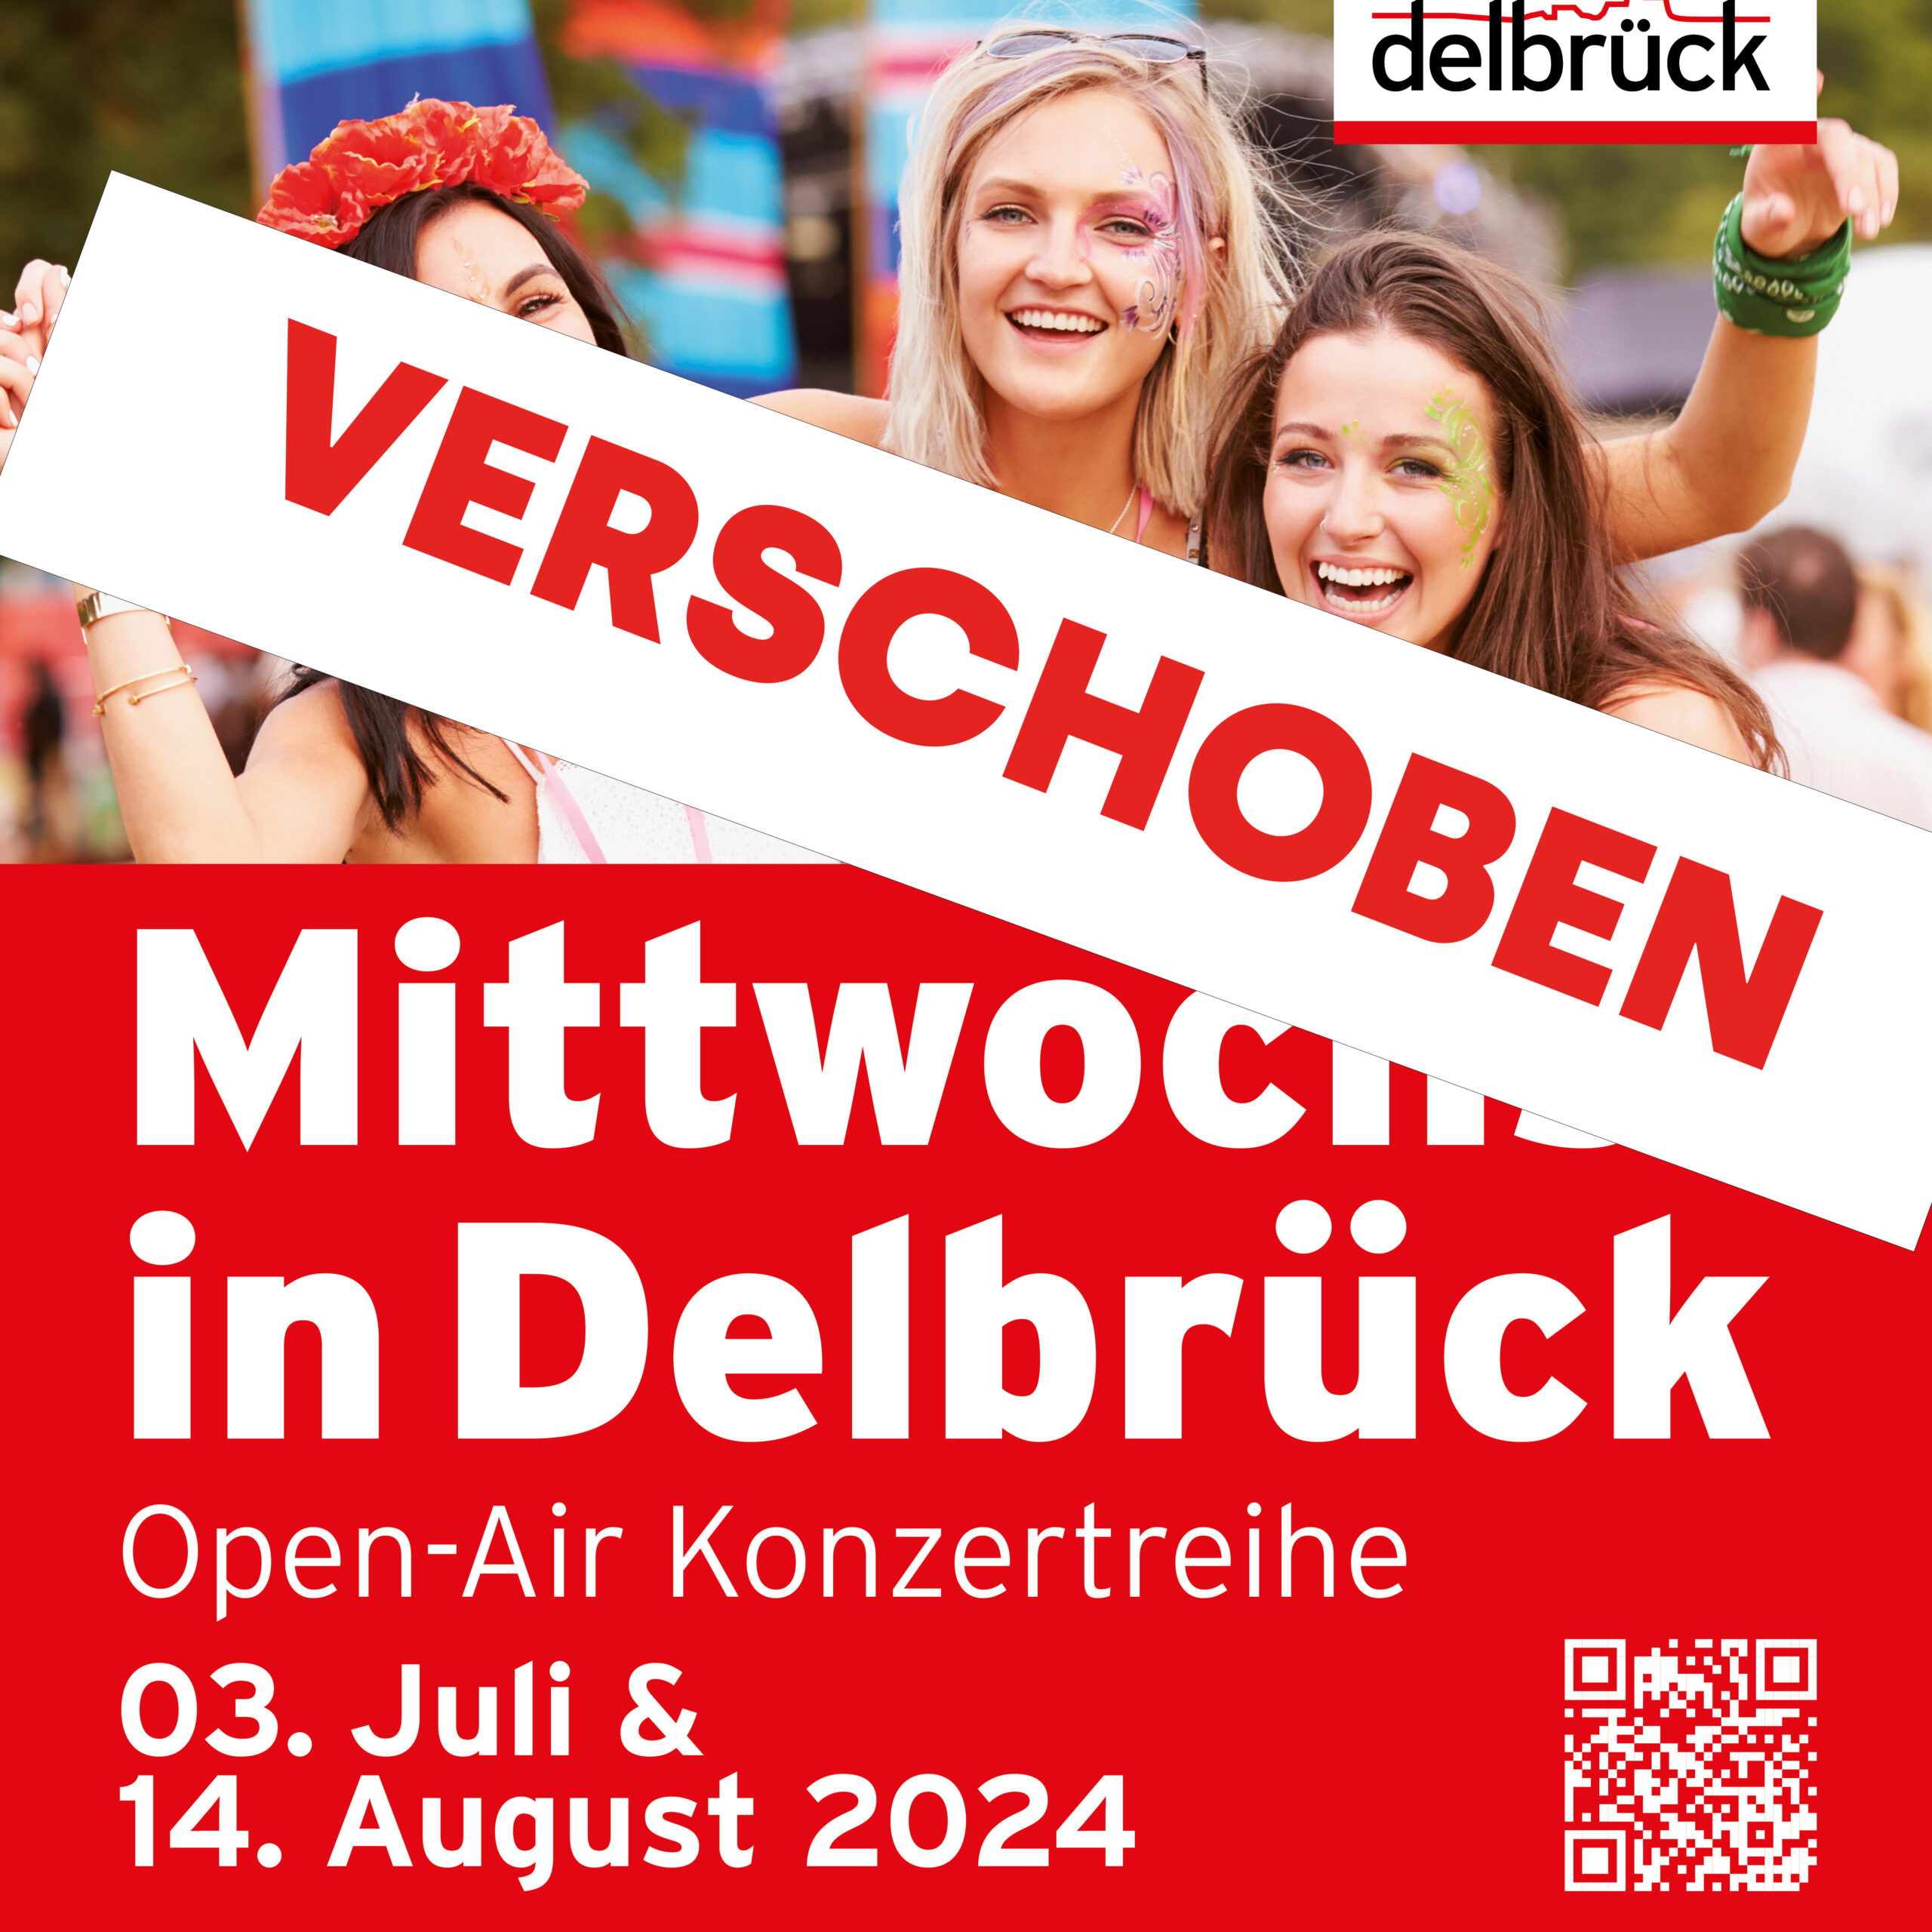 Verschoben! Sommerkonzertreihe „Mittwochs in Delbrück“ 